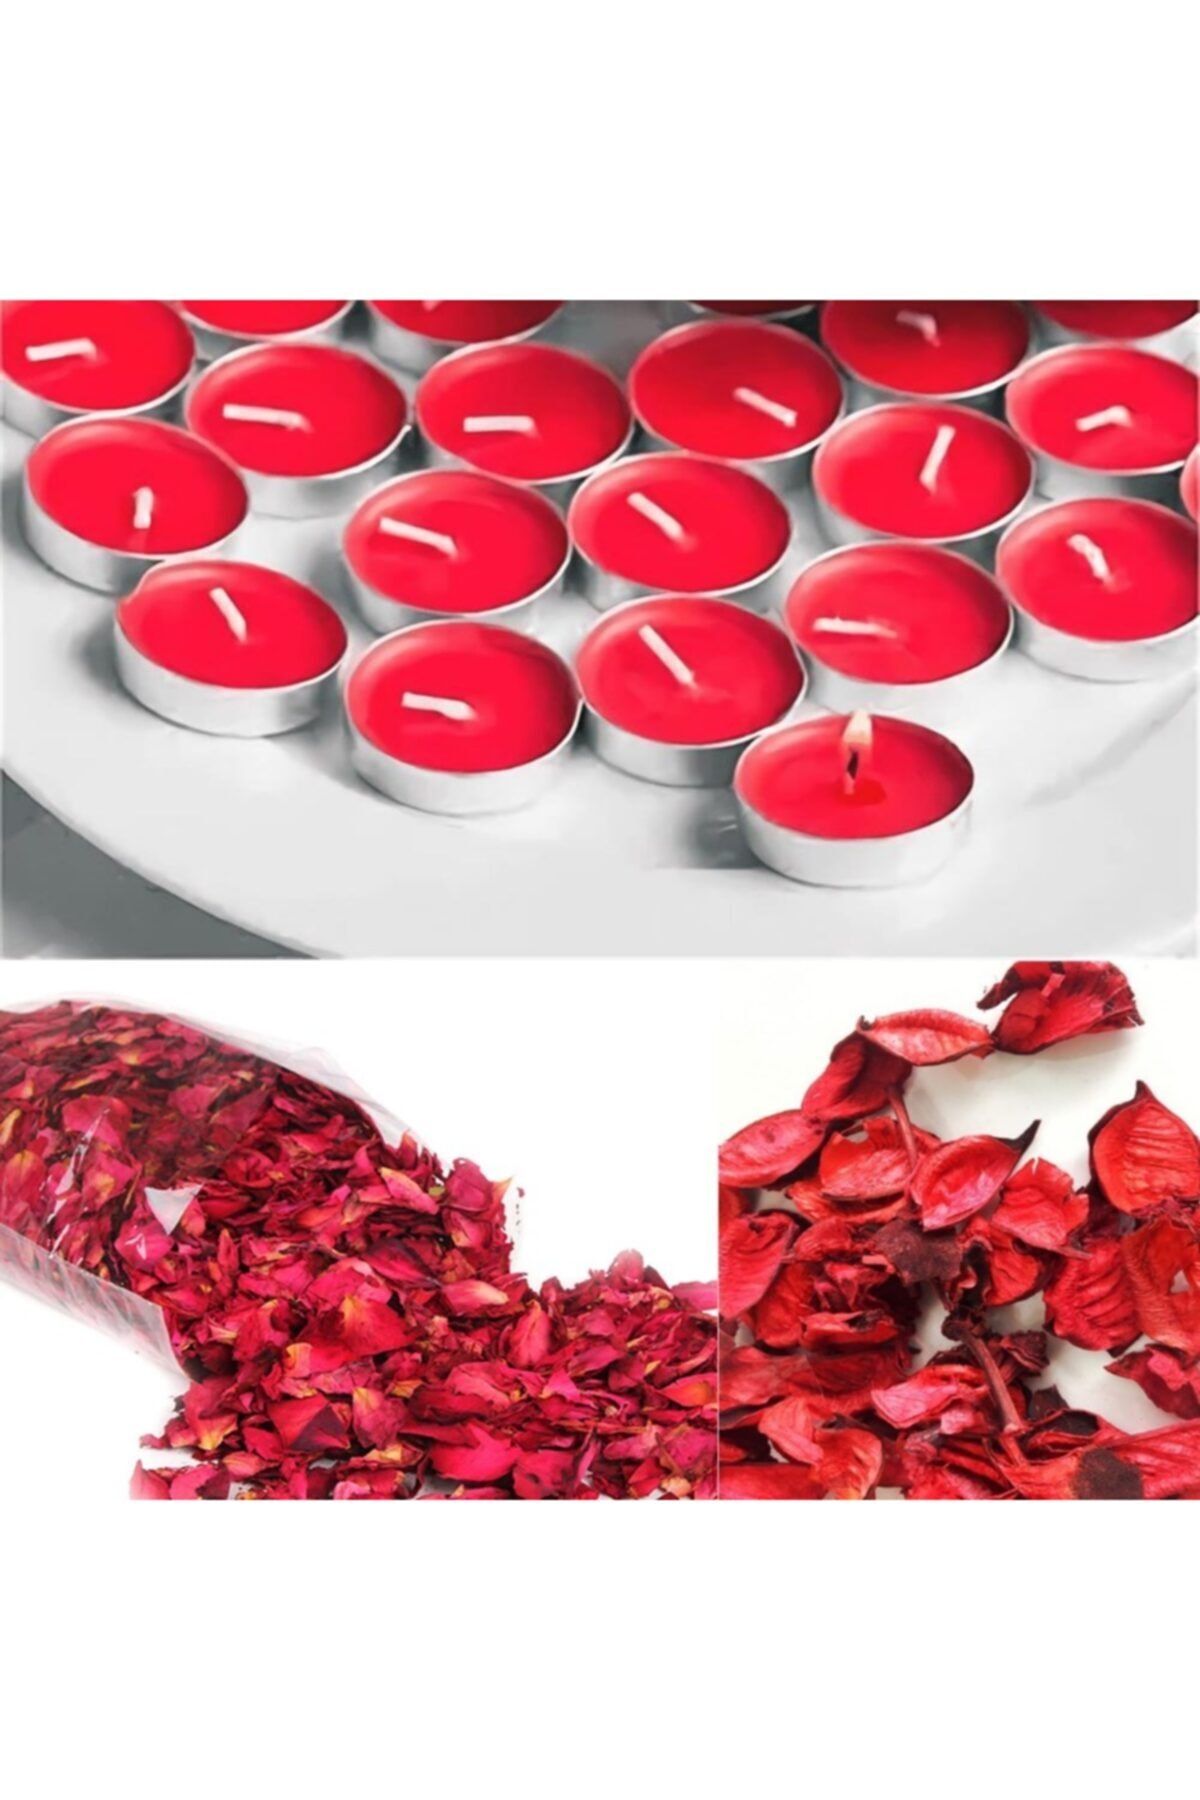 Deco Elit 1000 Adet Kuru Gül Yaprağı 25 Adet Kırmızı Tealight Mum Romantik Süsleme Fiyatı 